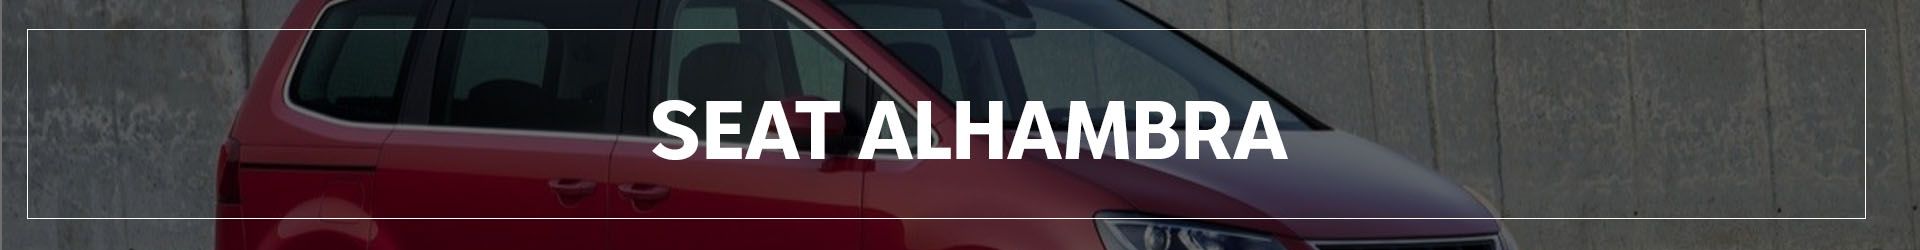 SEAT ALHAMBRA | Automocion Terry Concesionario SEAT Cadiz